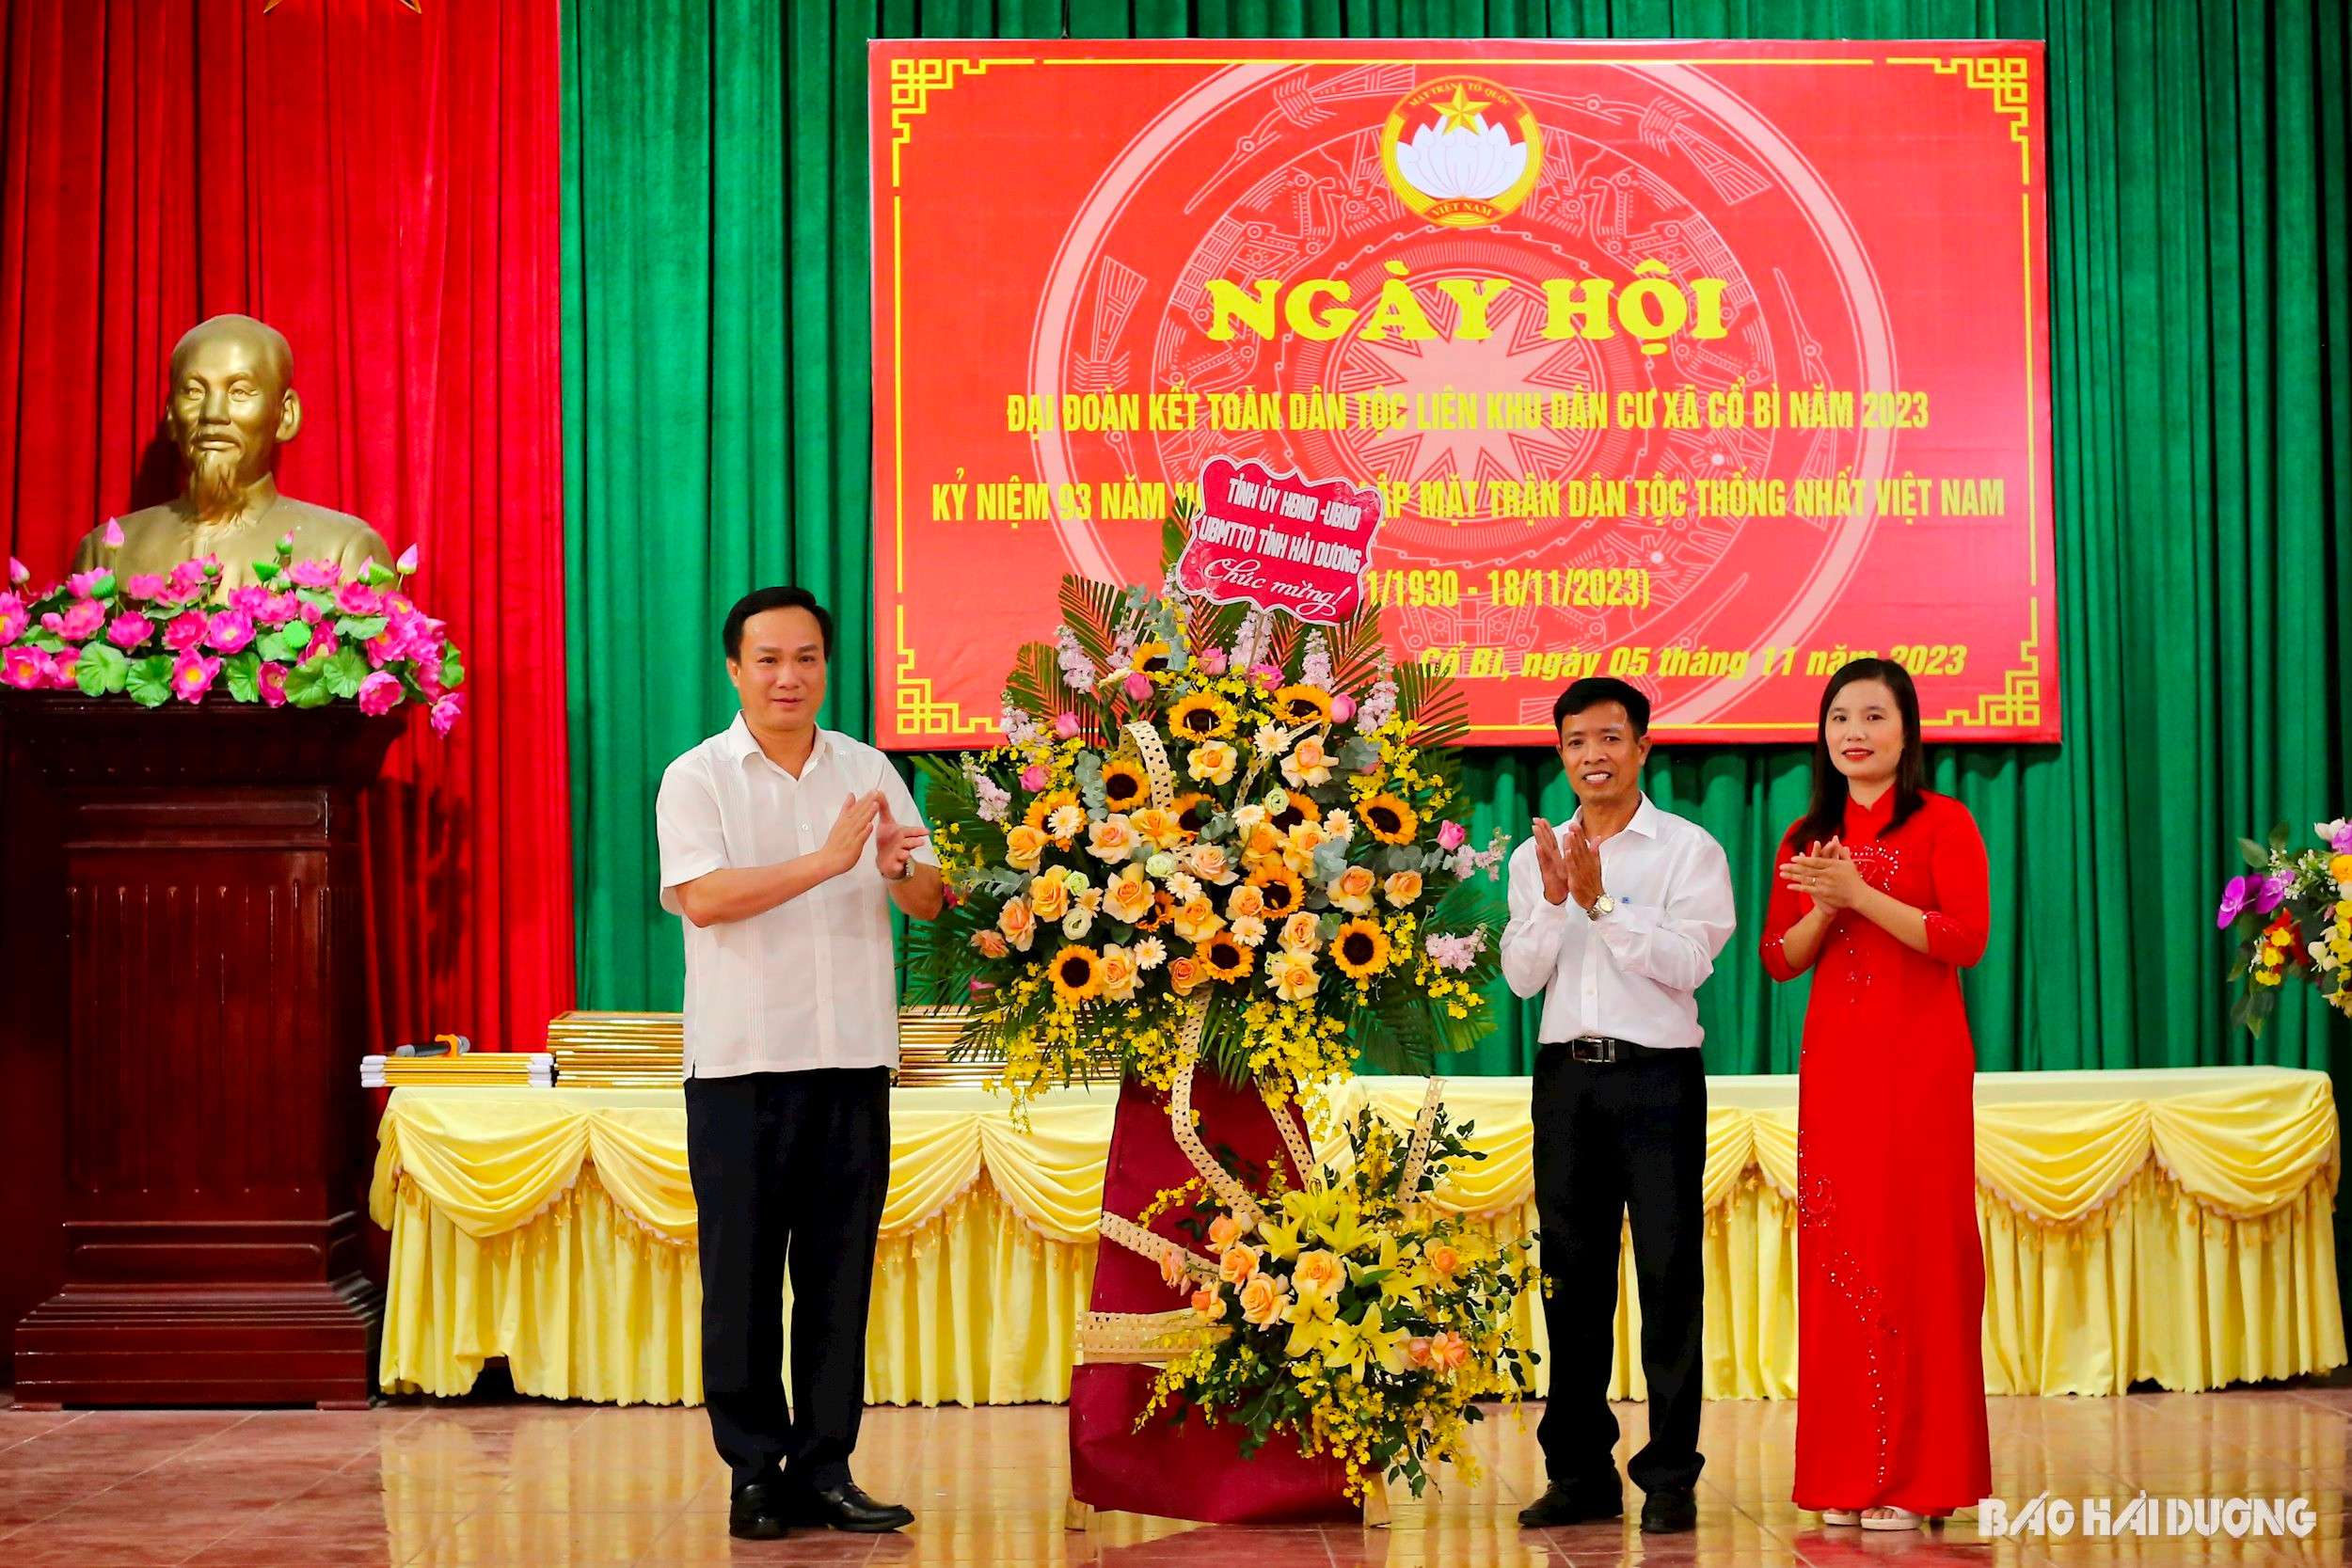 VIDEO: Chủ tịch UBND tỉnh dự Ngày hội Đại đoàn kết toàn dân tộc xã Cổ Bì, huyện Bình Giang